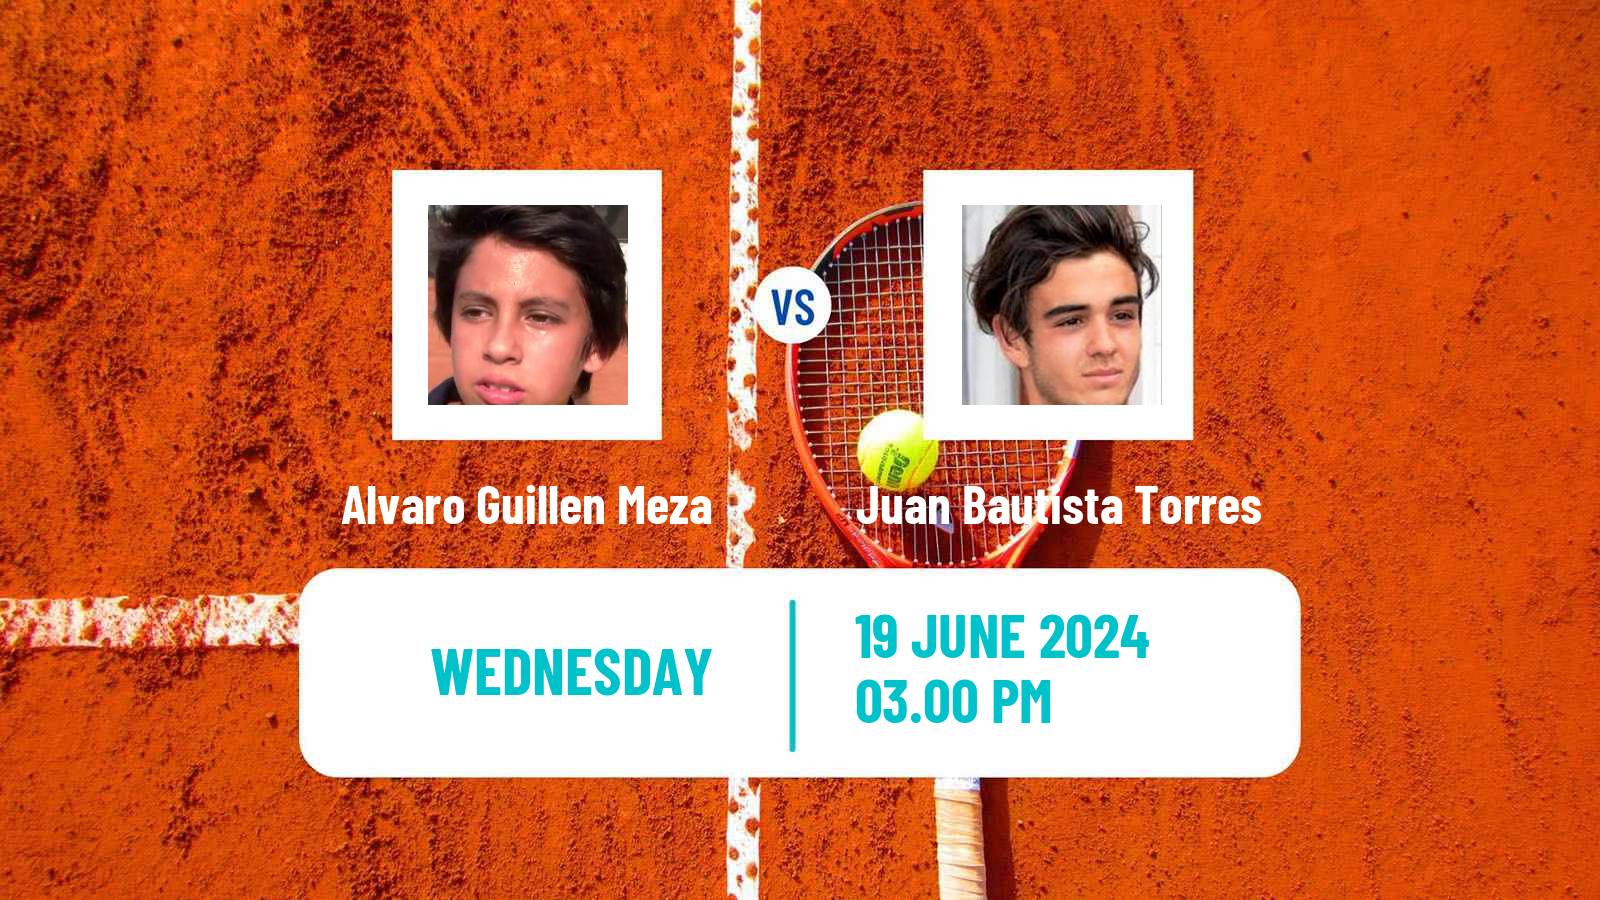 Tennis Santa Cruz 2 Challenger Men Alvaro Guillen Meza - Juan Bautista Torres